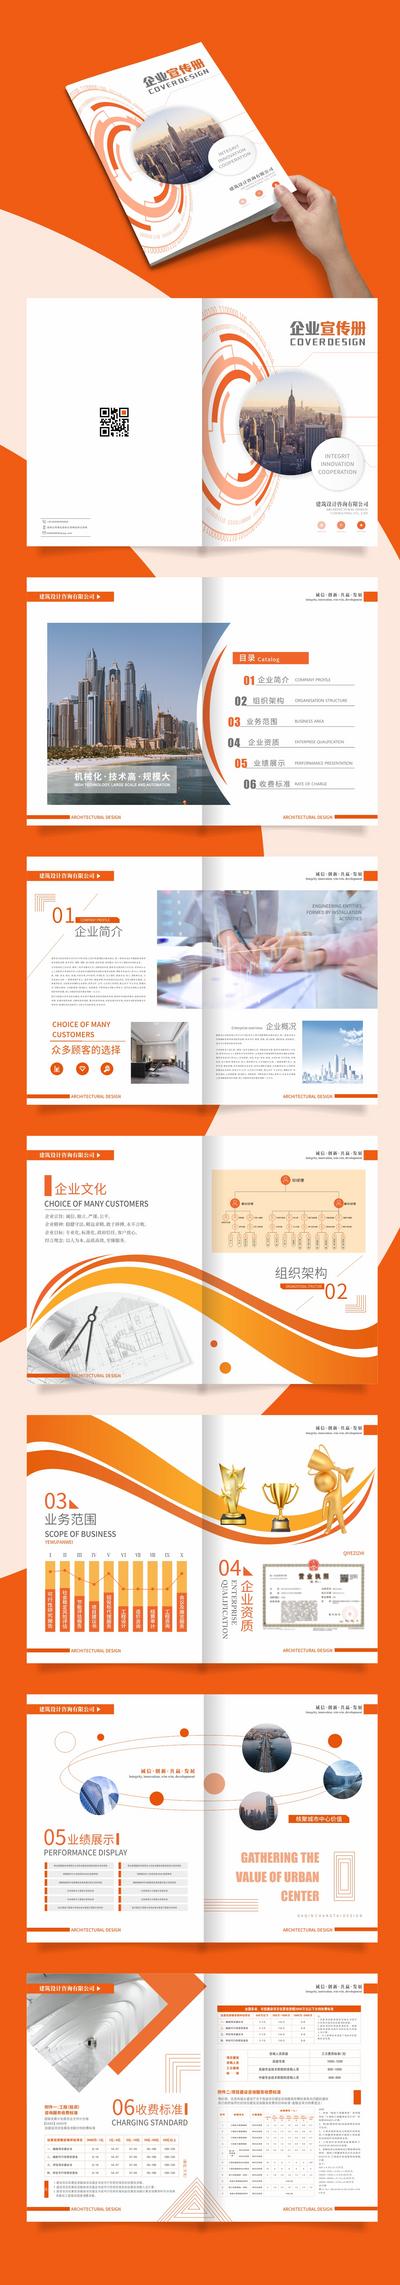 南门网 建筑企业公司画册设计